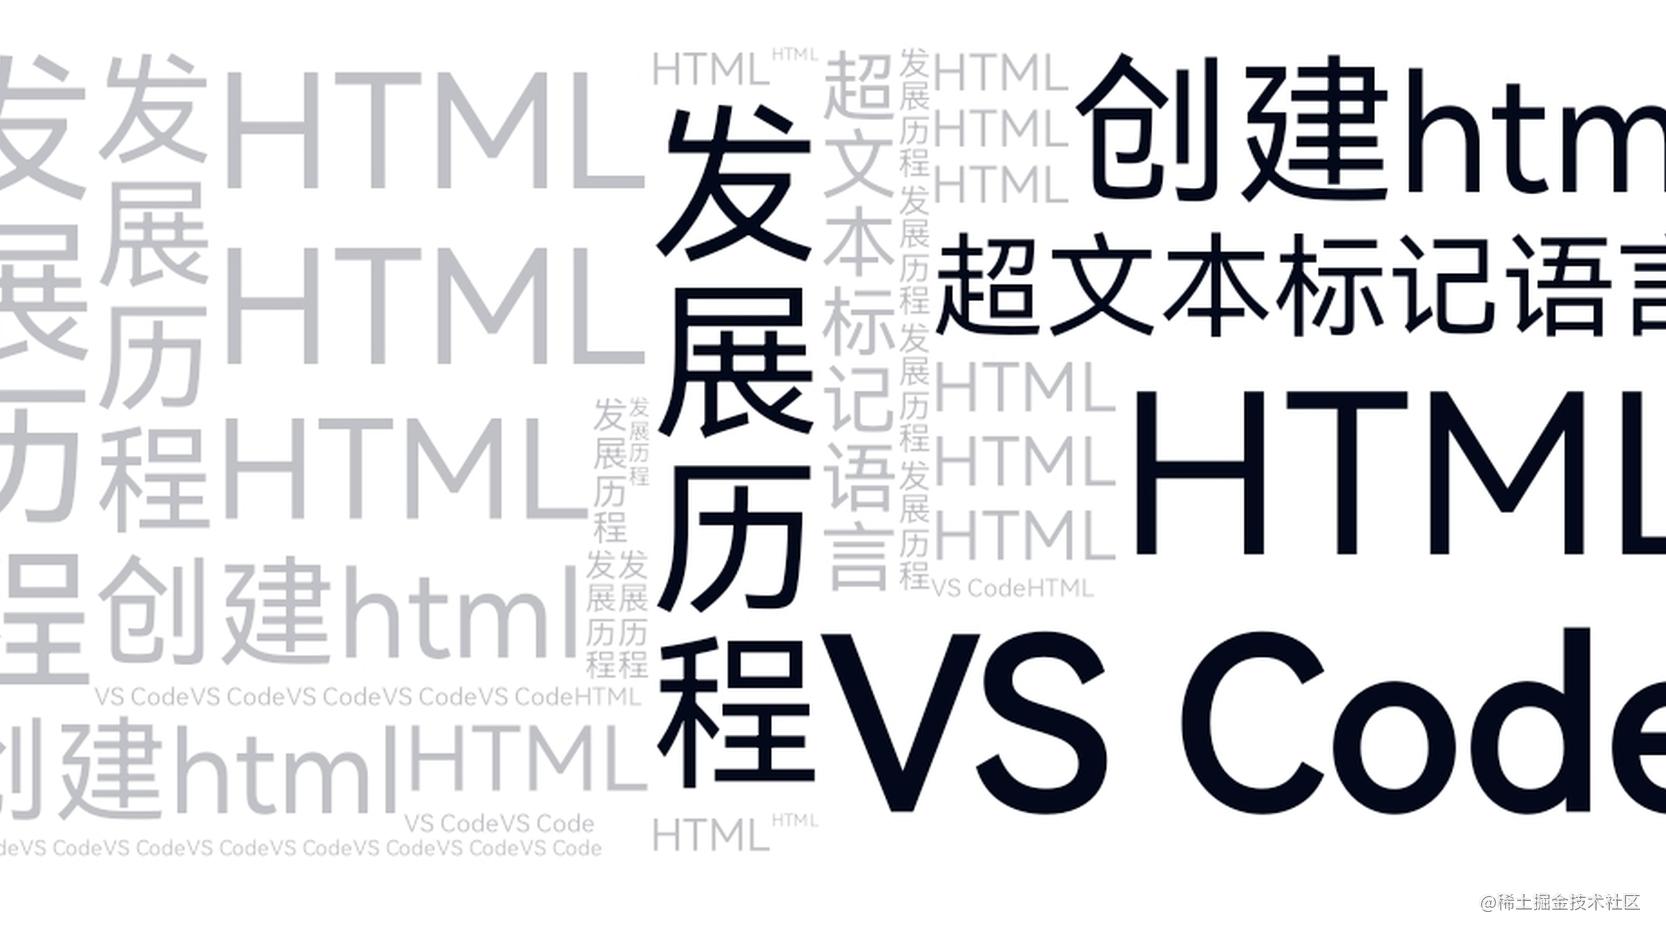  二、HTML概述